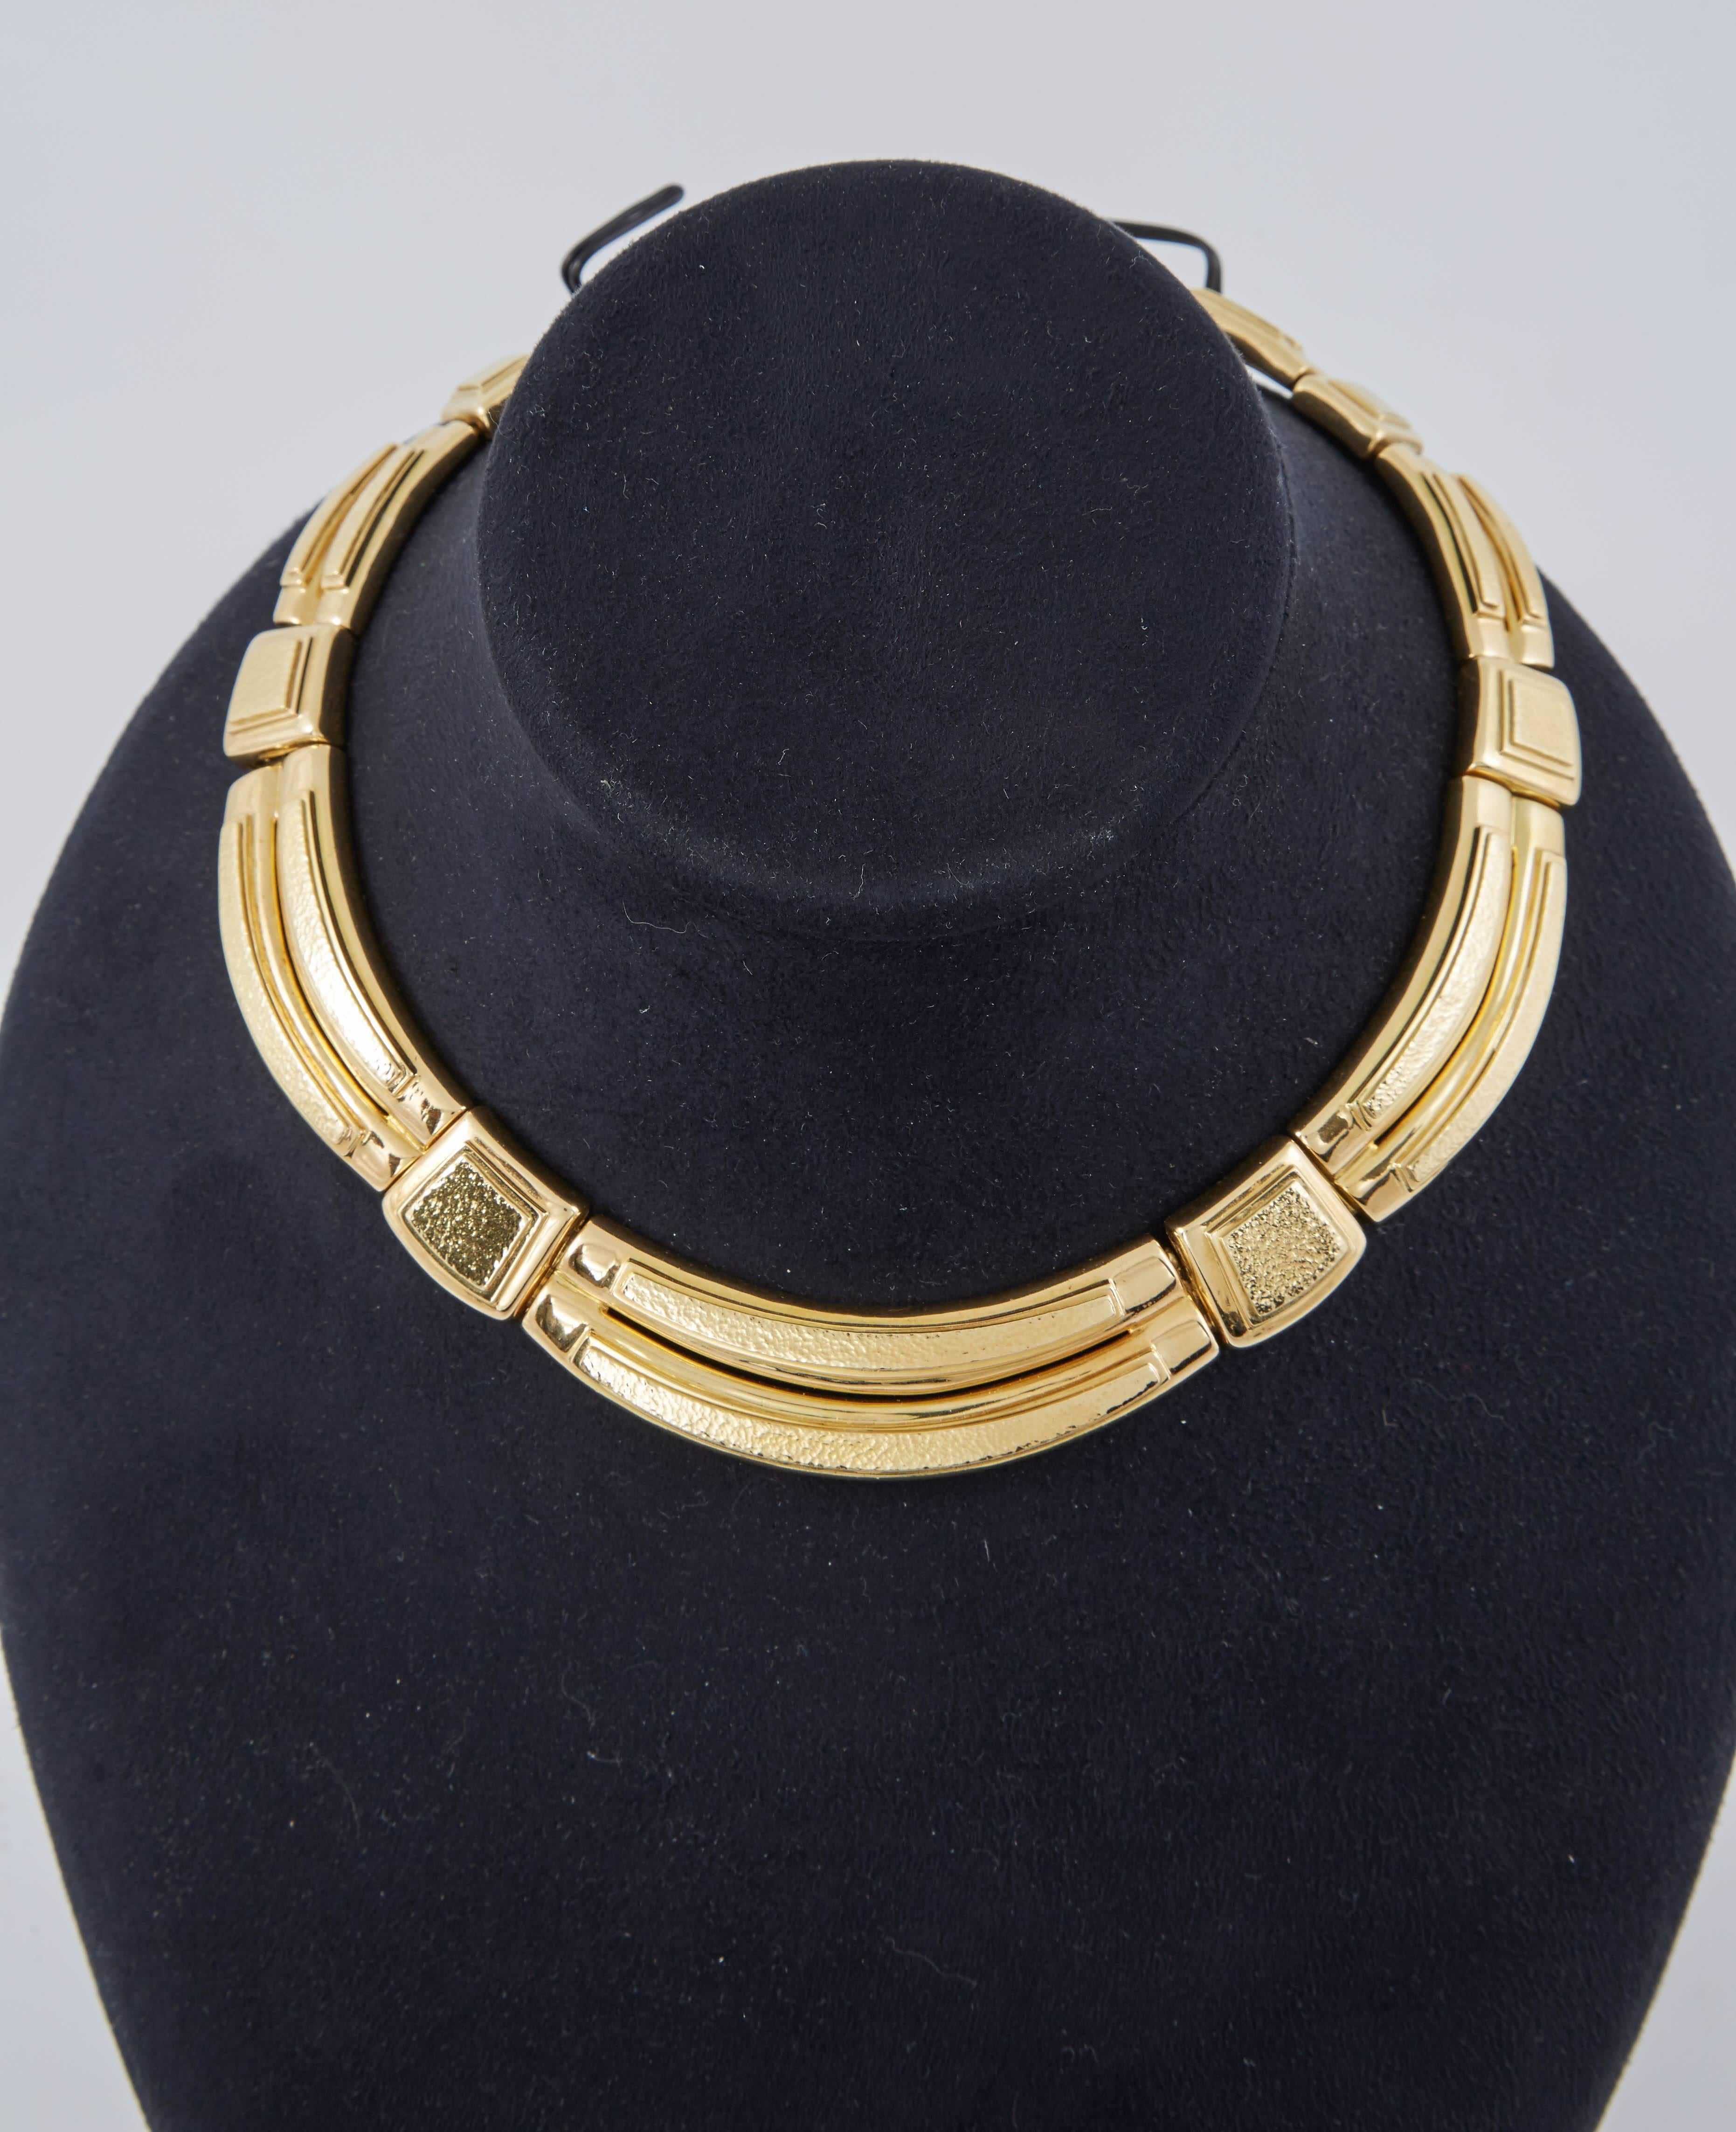 Die Halskette ist ein auffälliges Kropfband aus großen Gliedern, die fein aus gehämmertem 18-karätigem Gold gefertigt sind. 